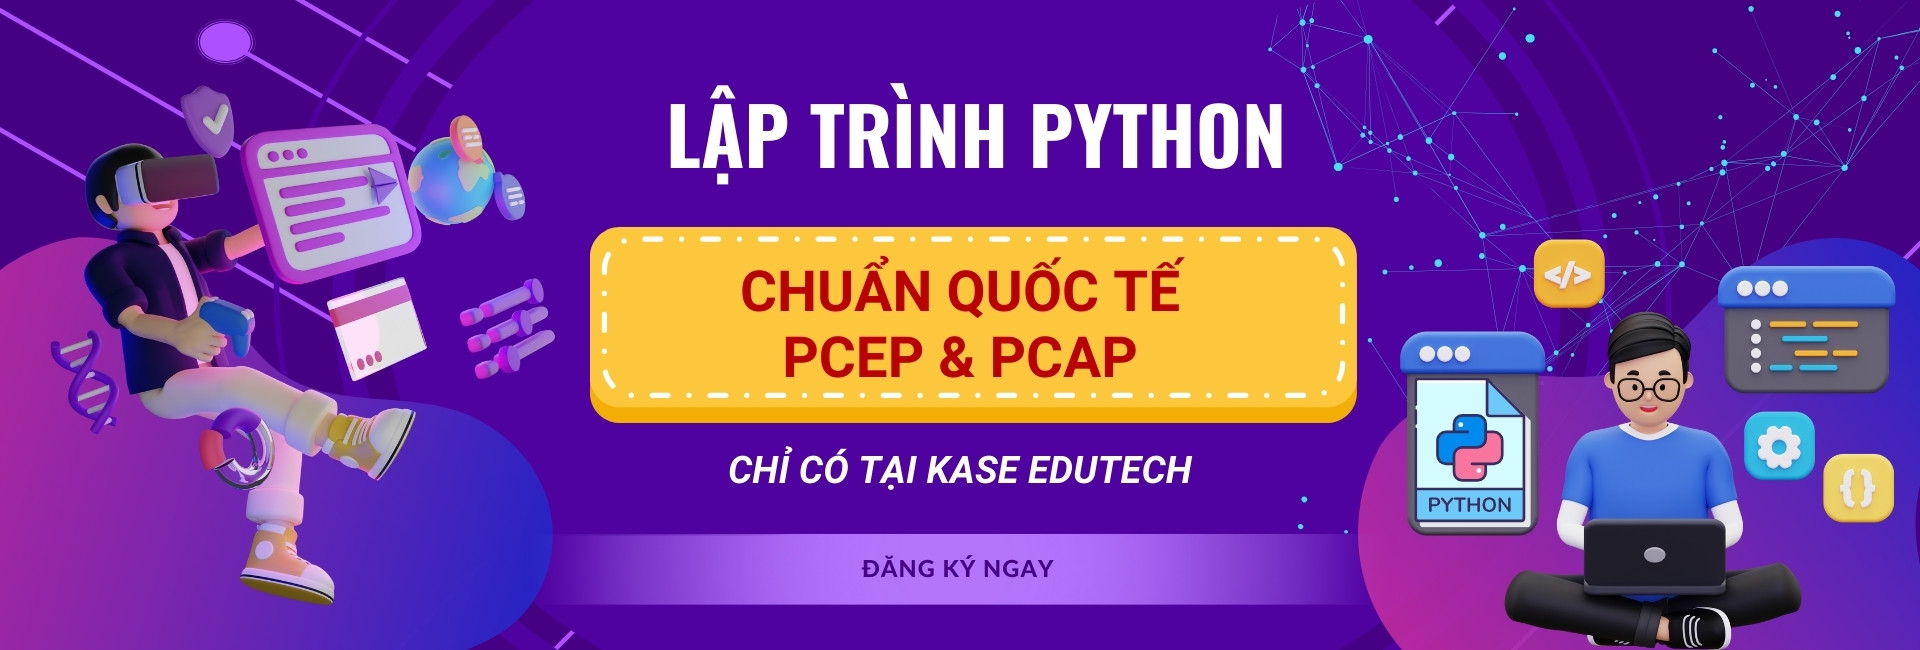 khóa học lập trình python quốc tế pcep & pcap